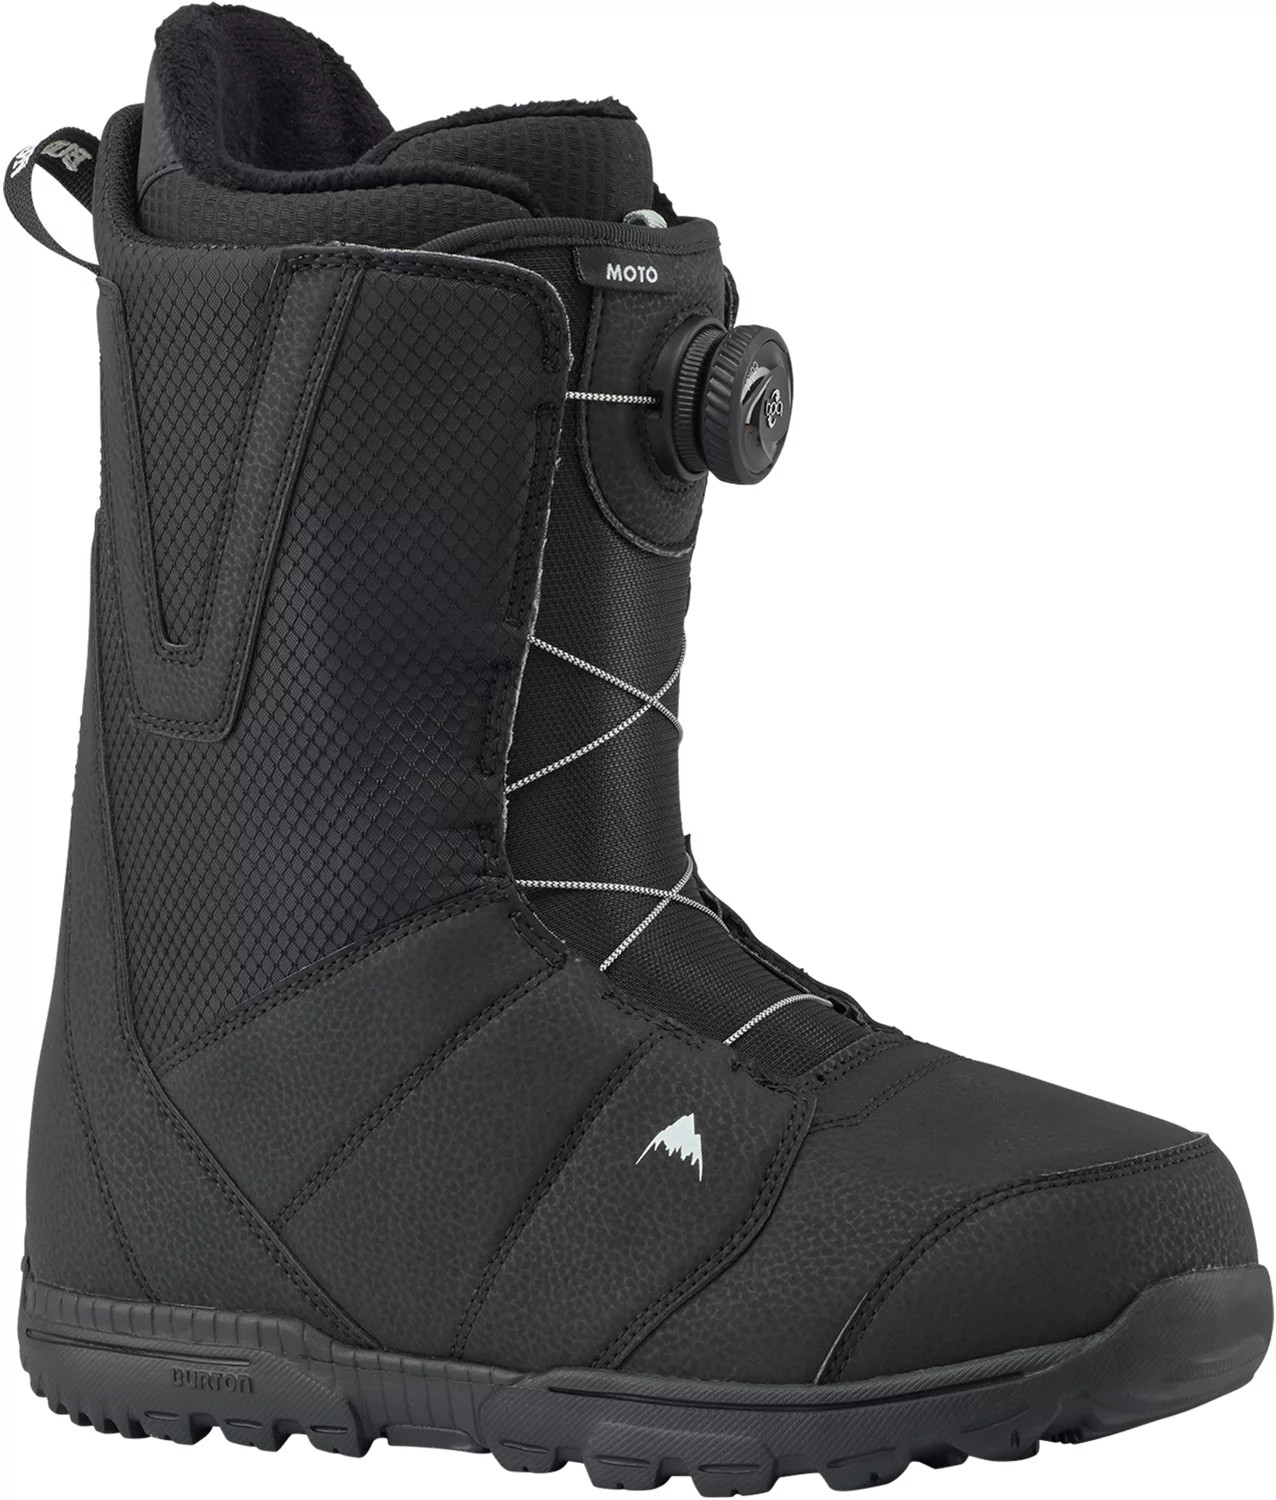 Ботинки сноубордические Burton 21-22 Moto Boa Black лыжные ботинки sns spine comfort 445